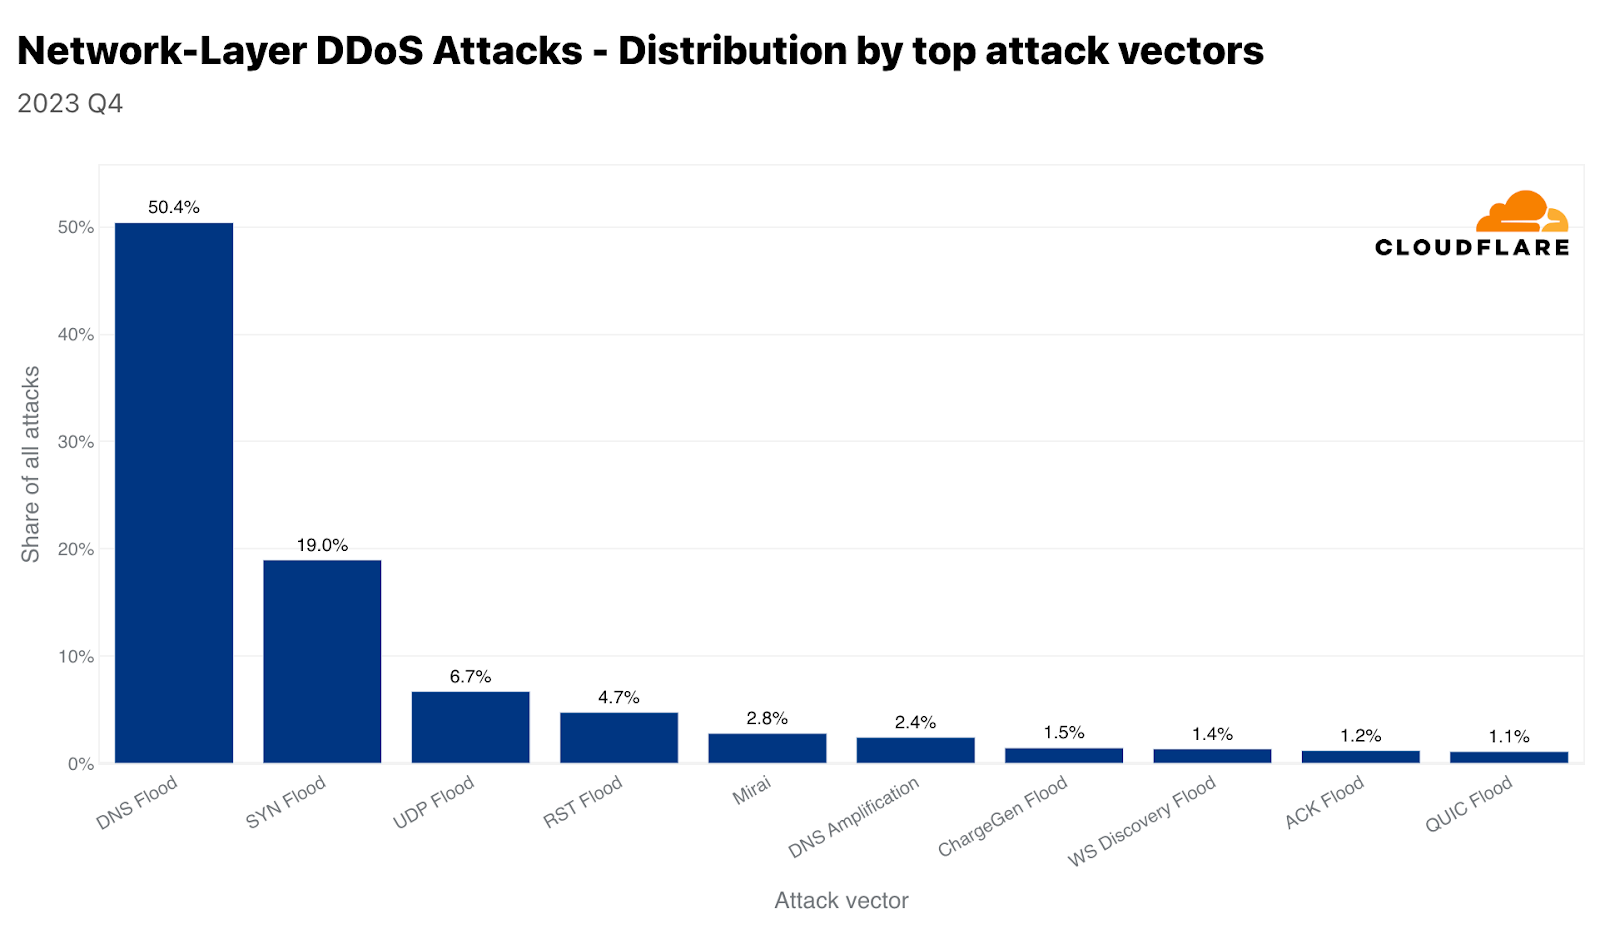 Top attack vectors